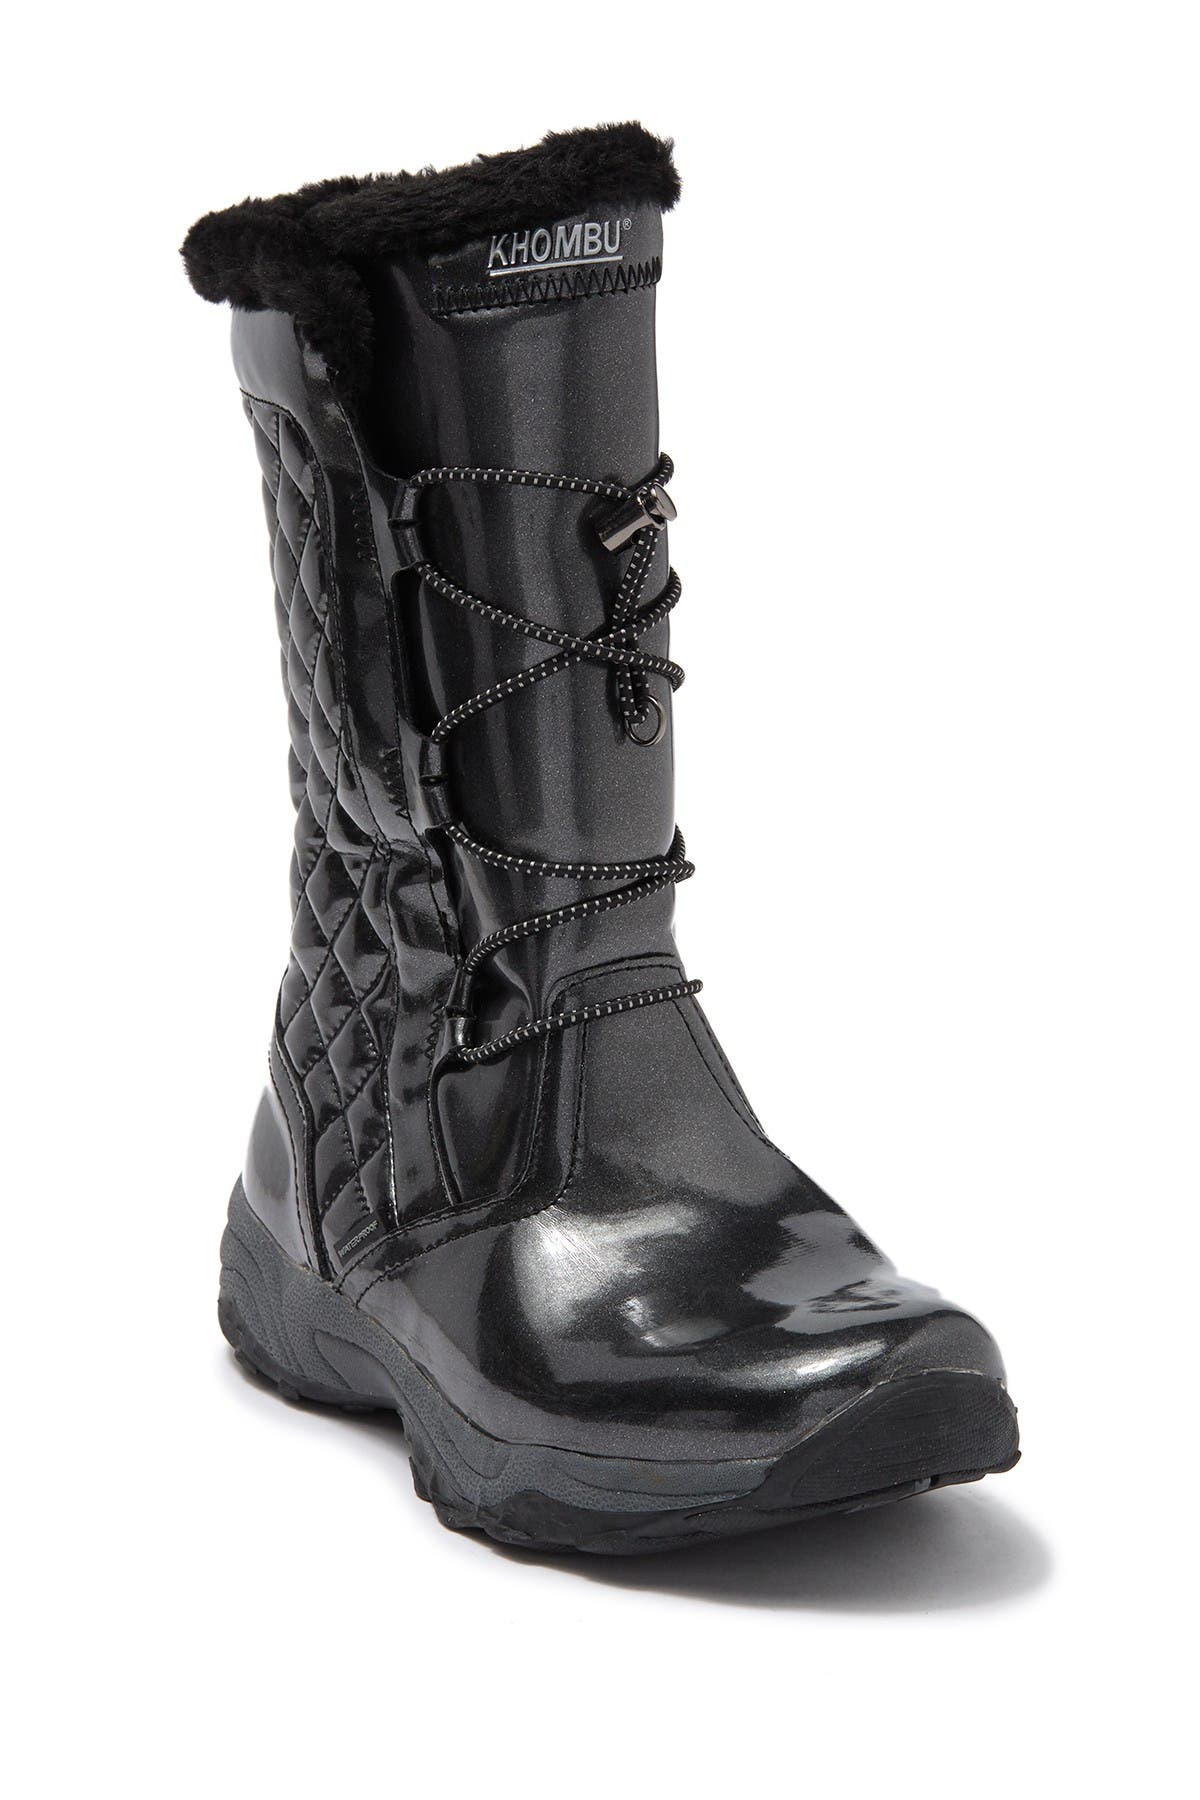 khombu moon boots